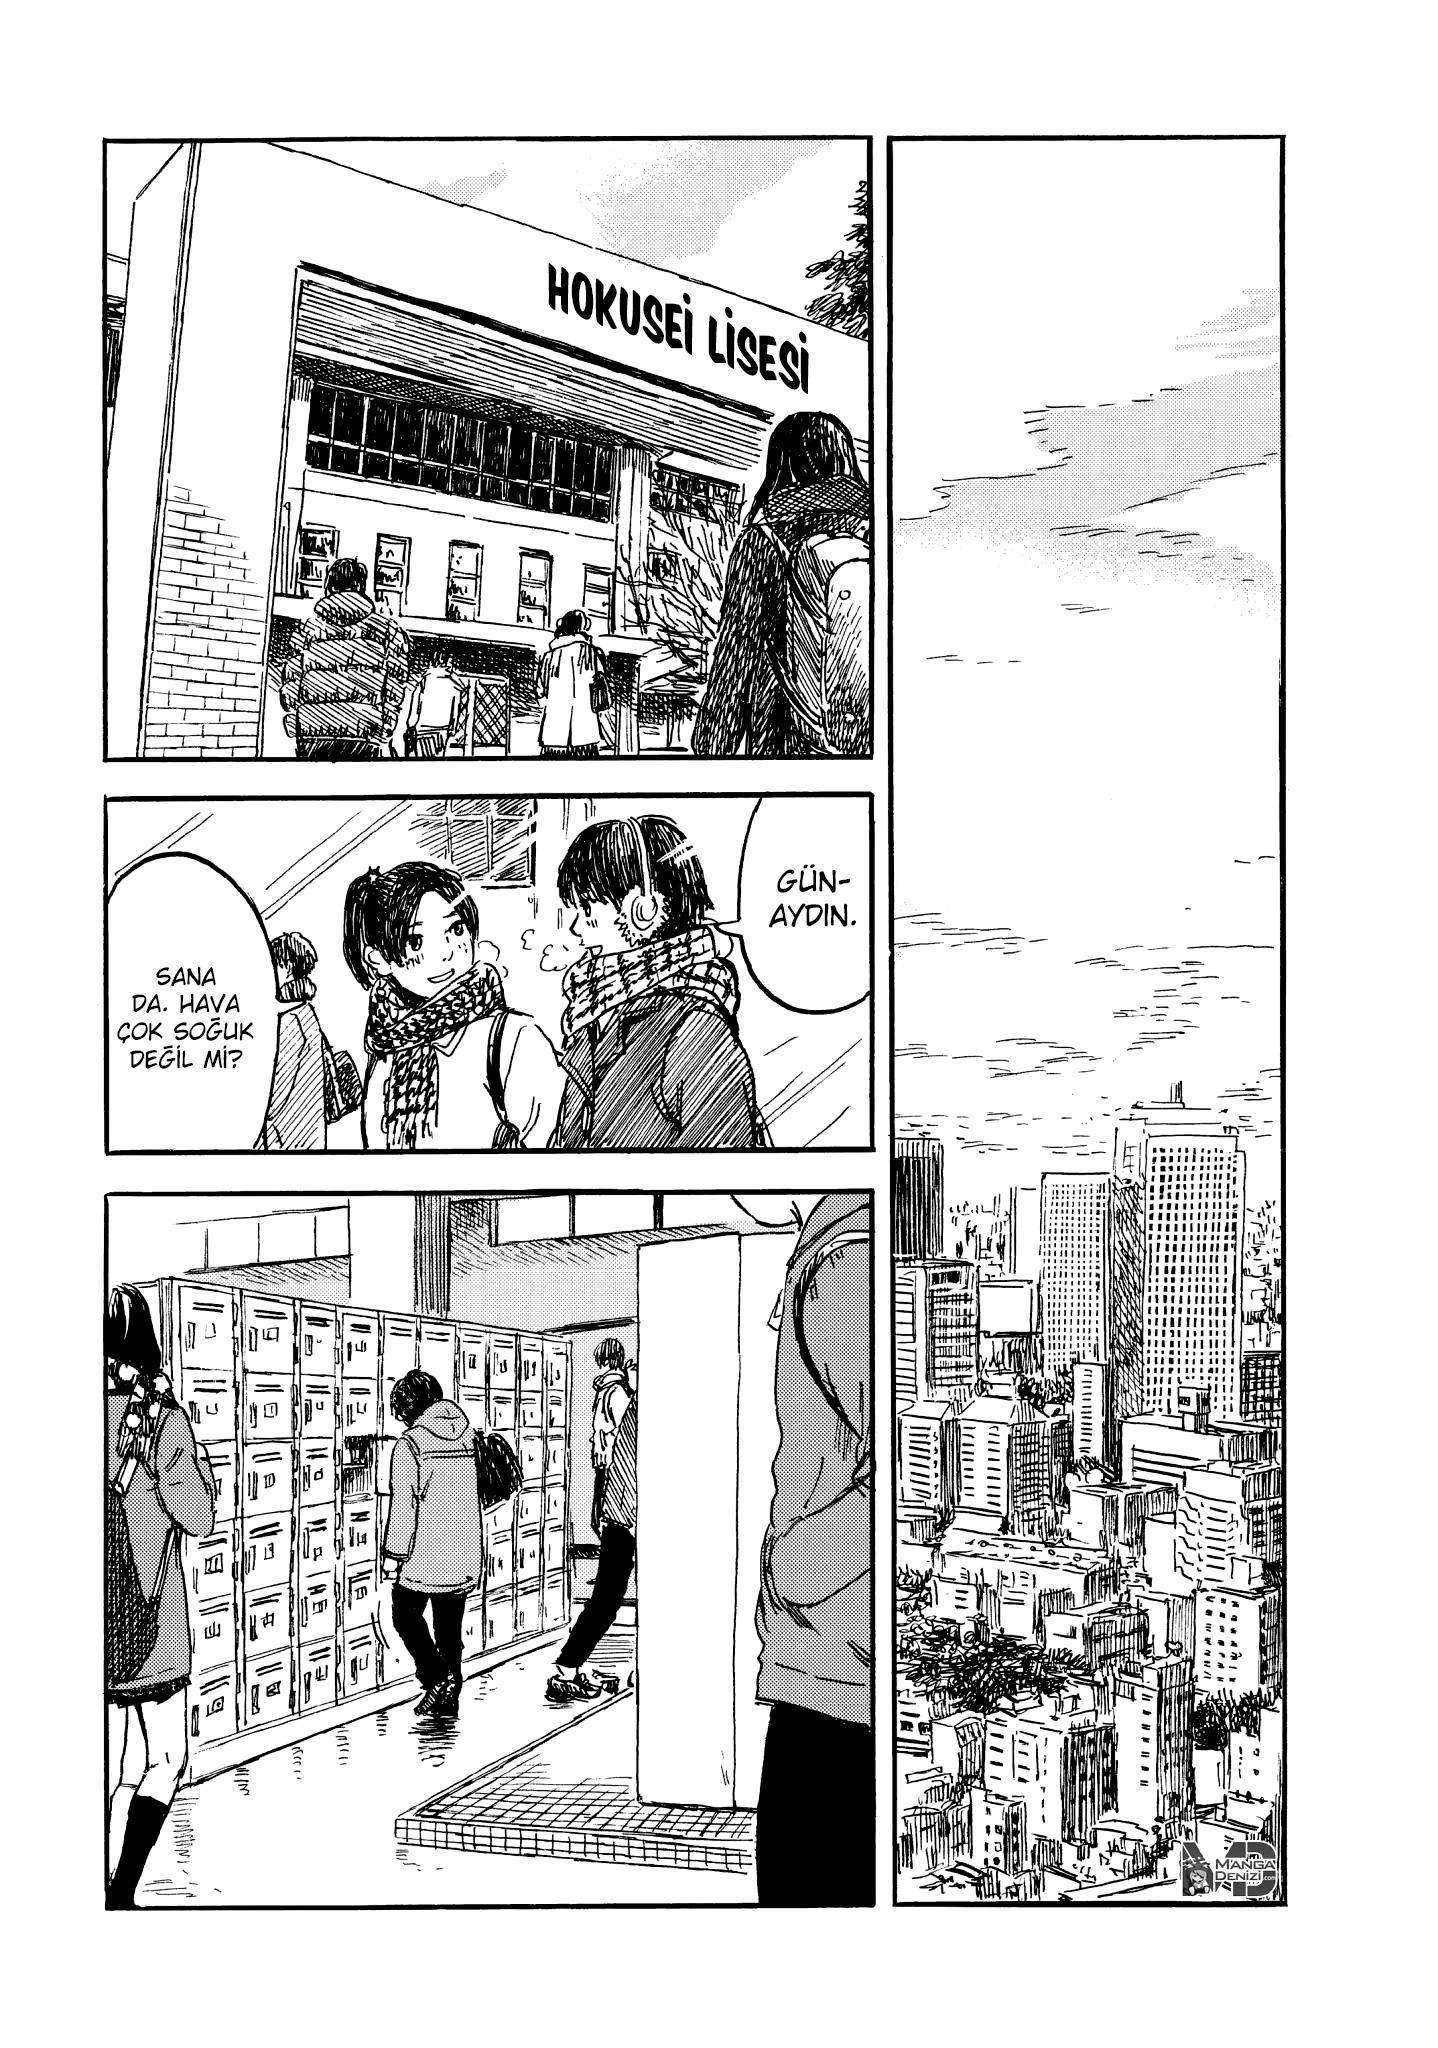 Happiness mangasının 07 bölümünün 3. sayfasını okuyorsunuz.